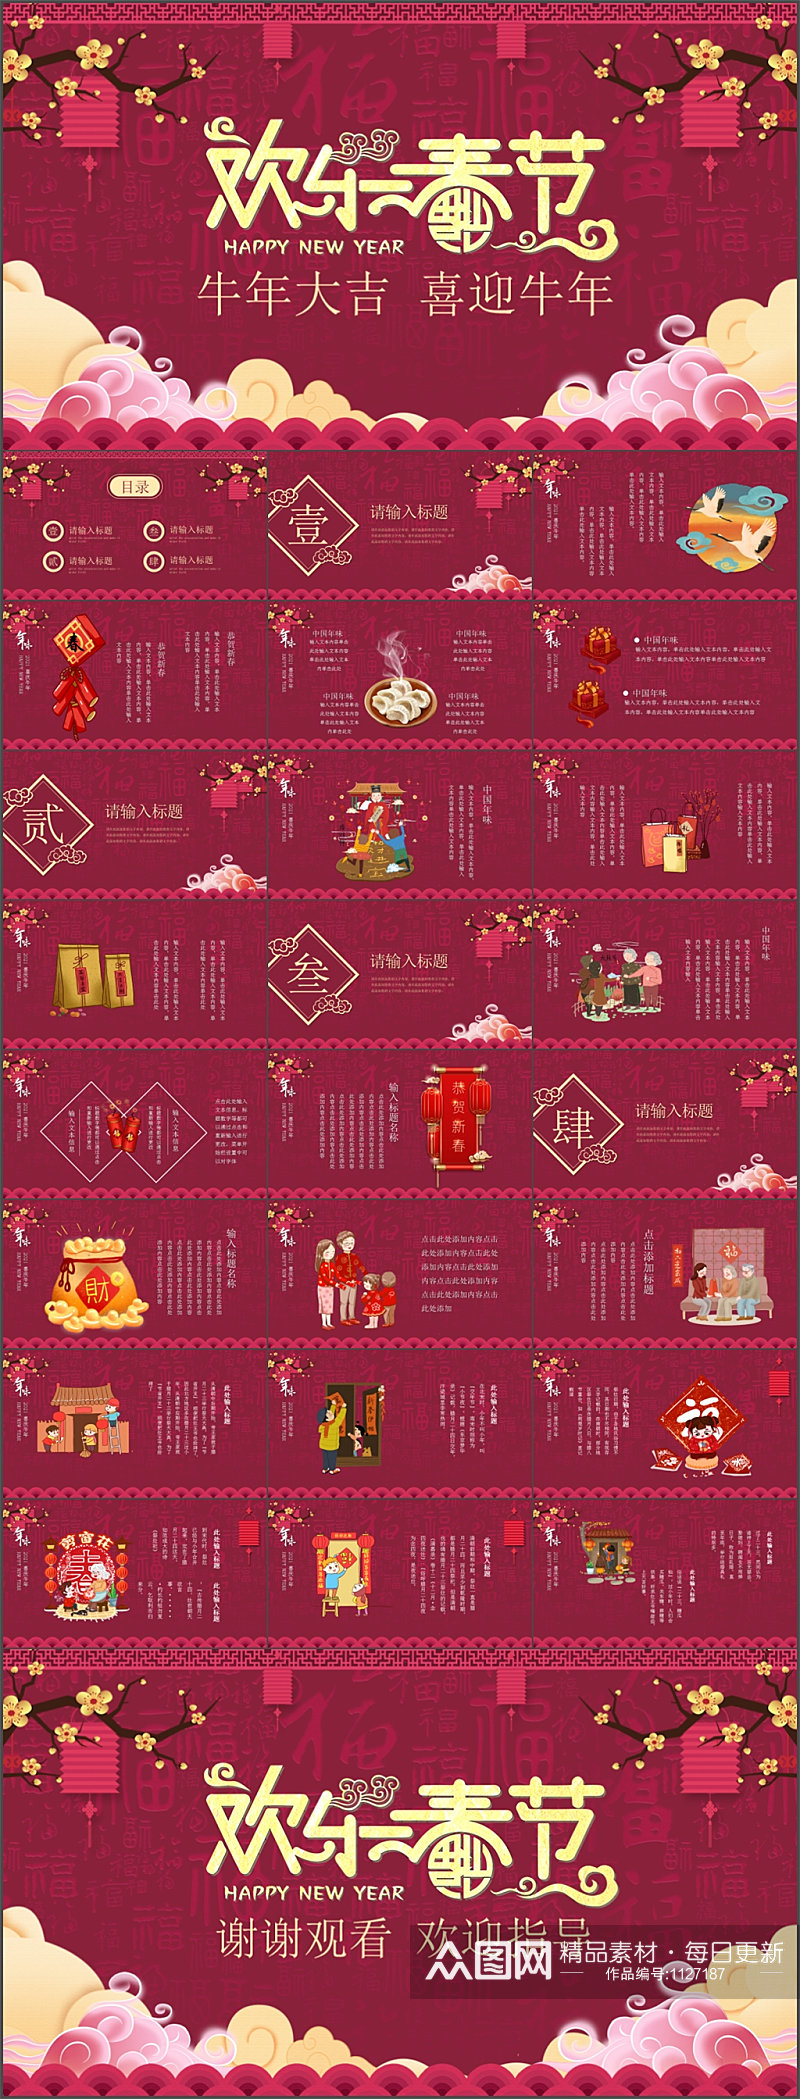 中国风春节文化习俗PPT模板素材